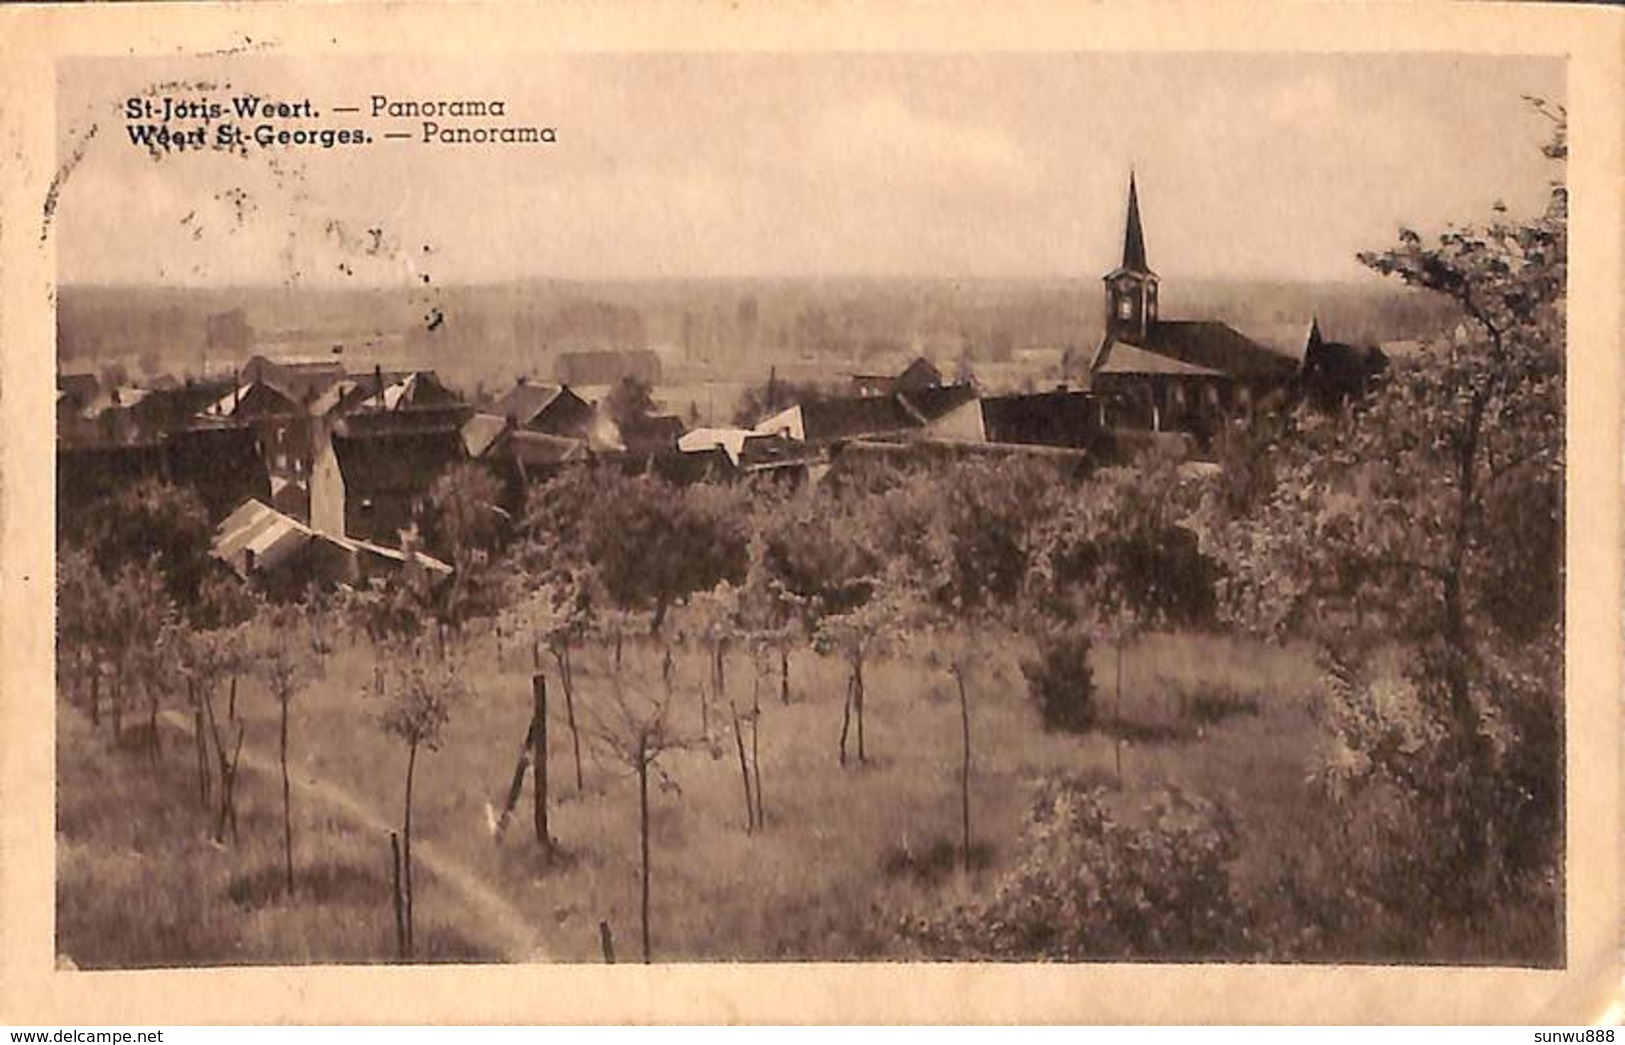 St Joris Weert - Panorama (1951) - Oud-Heverlee